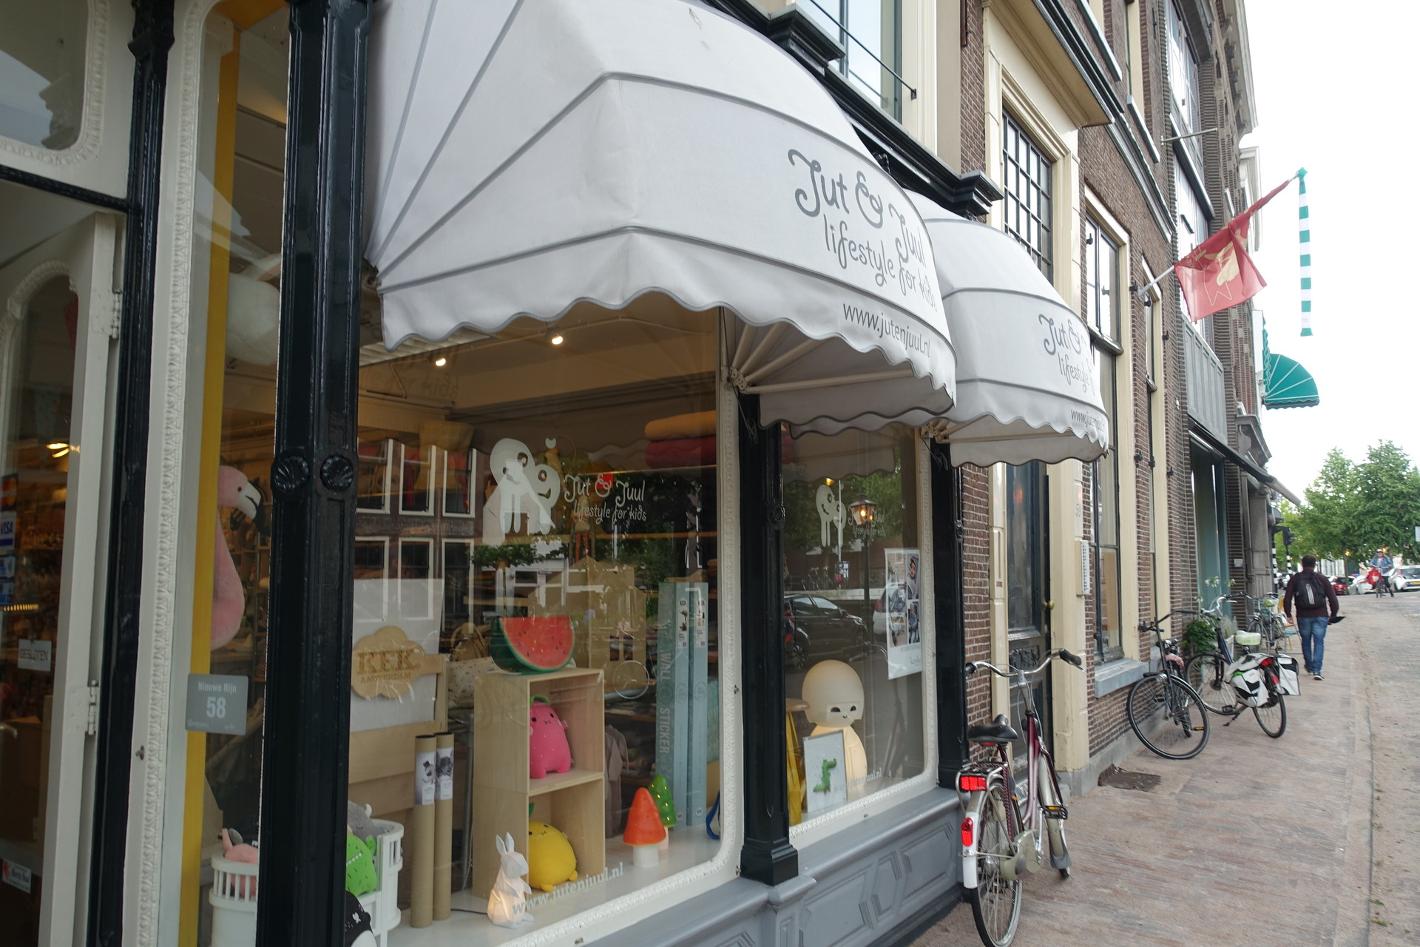 Foto Jut en Juul in Leiden, Winkelen, Gezellig shoppen - #5